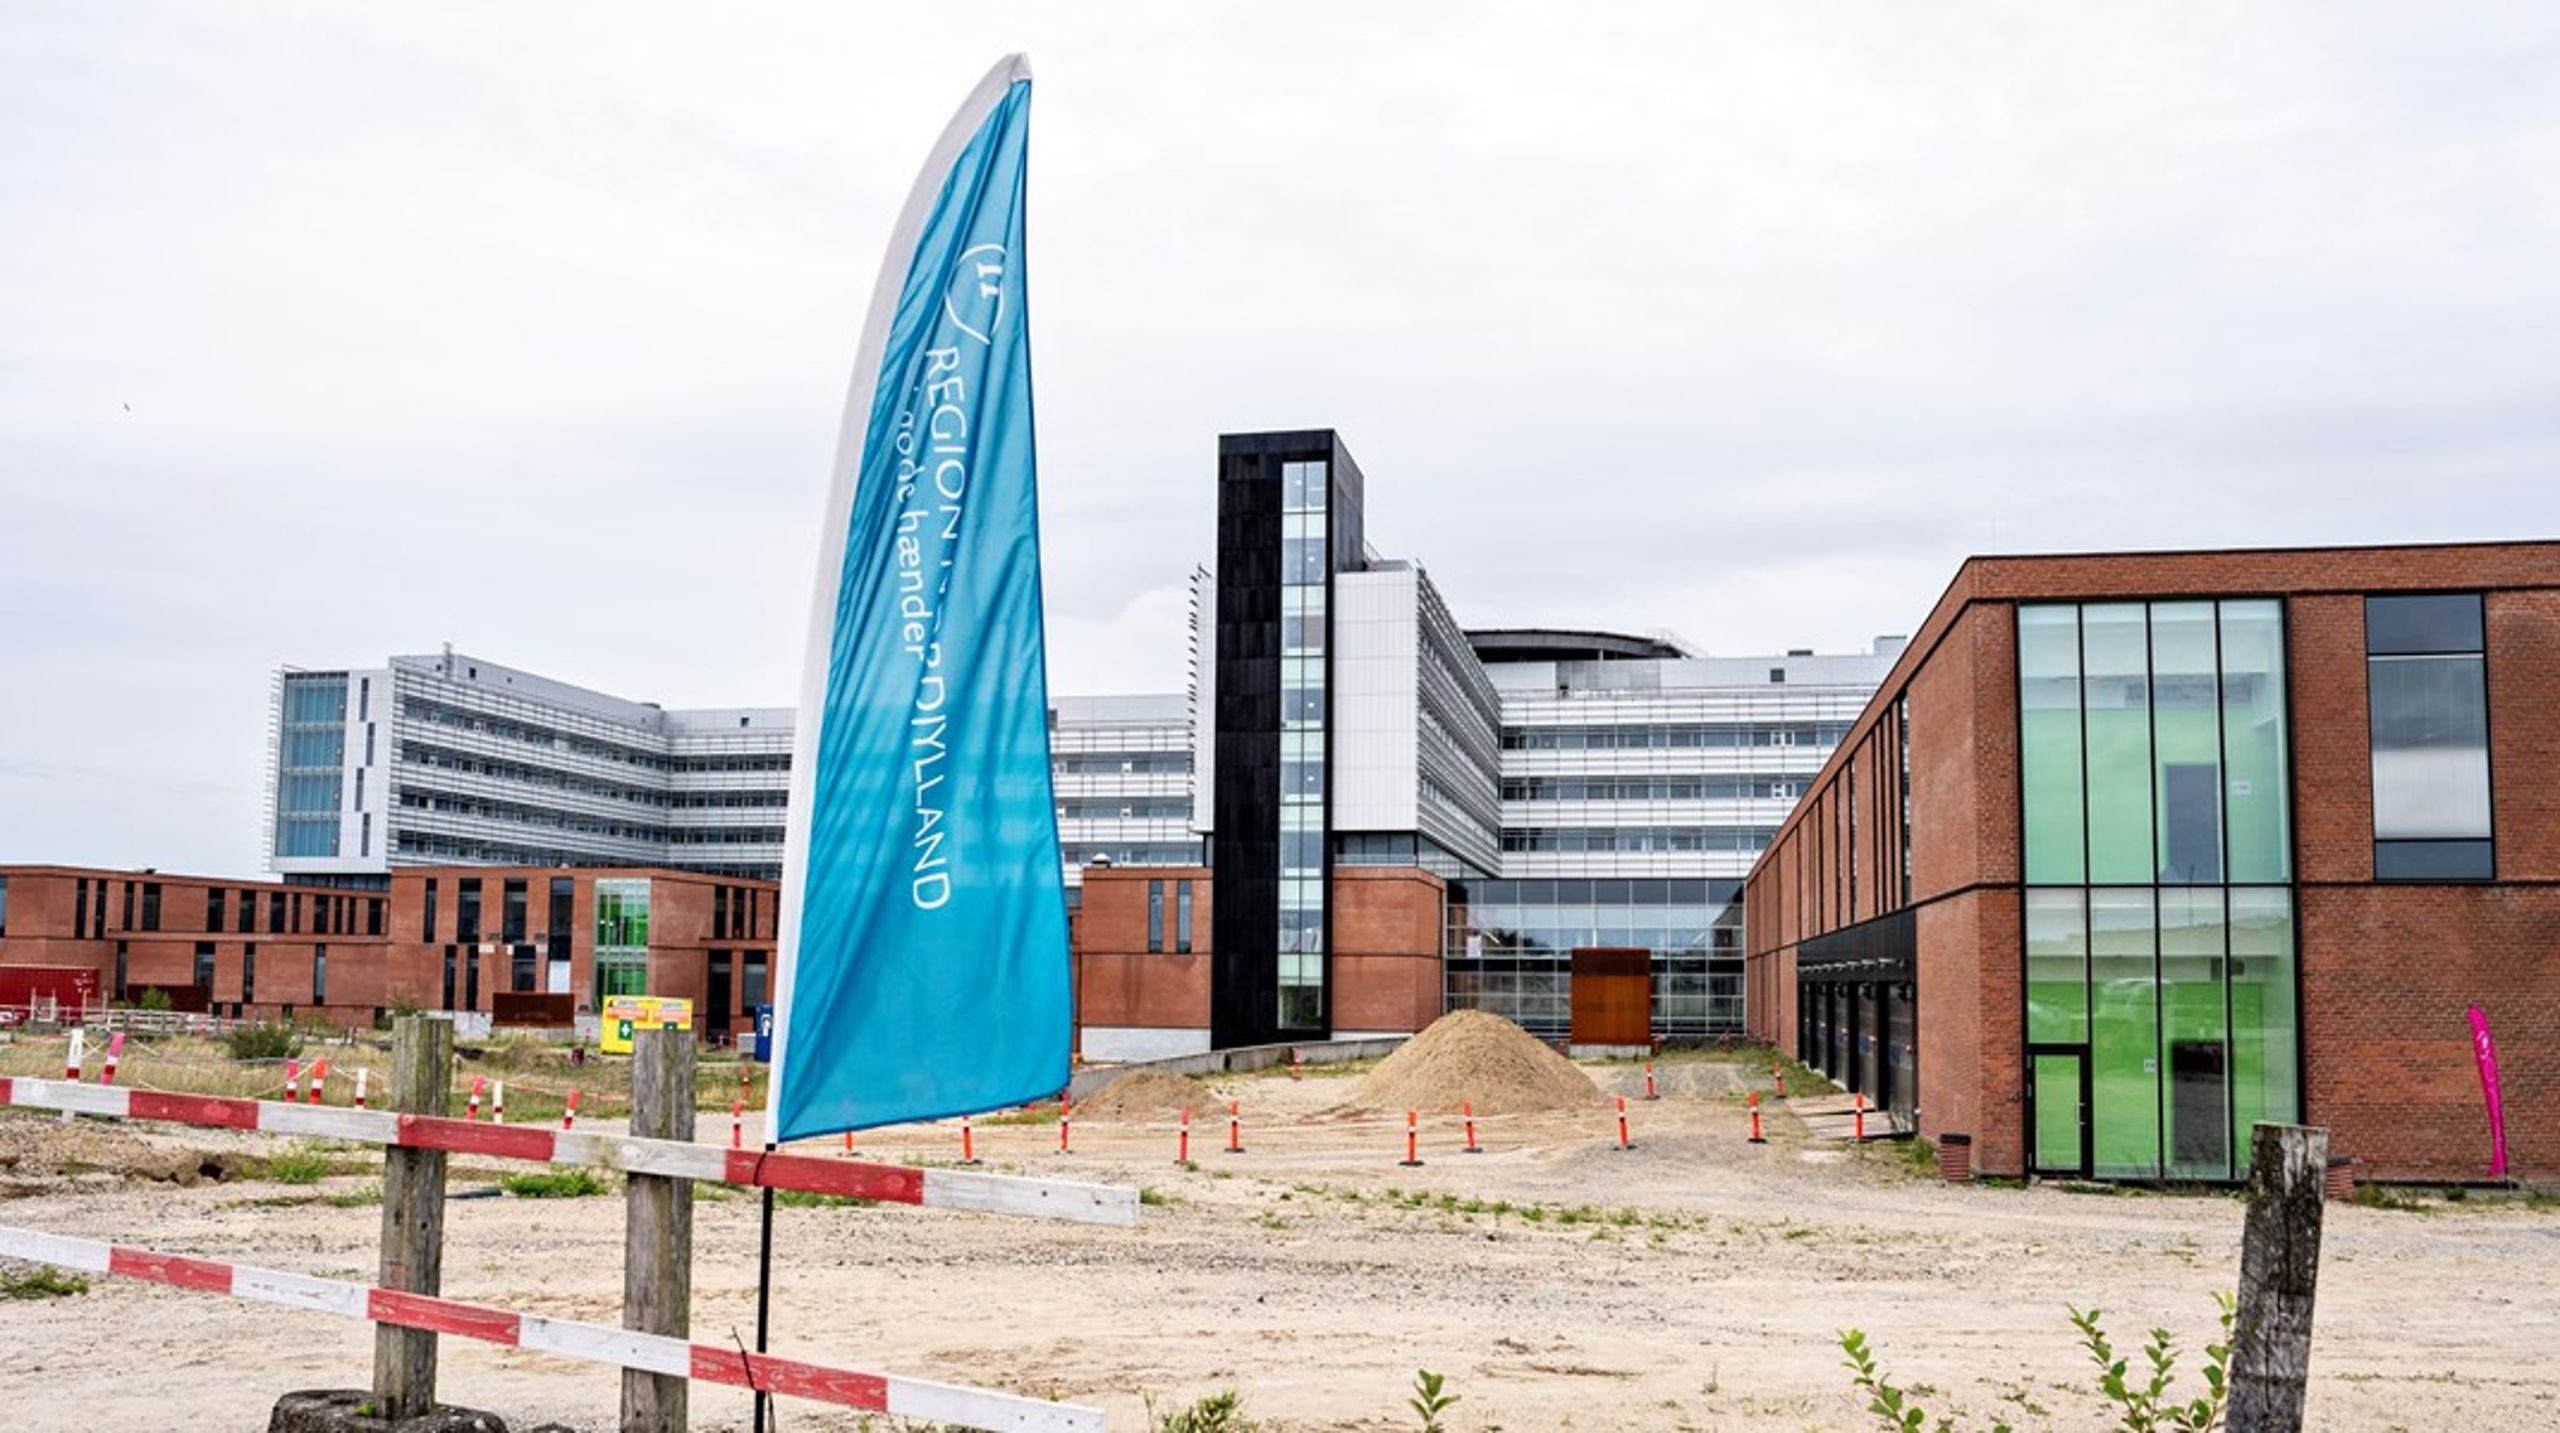 Det nye Aalborg Universitetshospital skulle oprindeligt have stået klar i 2021, men efter fejl og forsinkelser forventes hospitalet at kunne tage imod patienter i 2026.